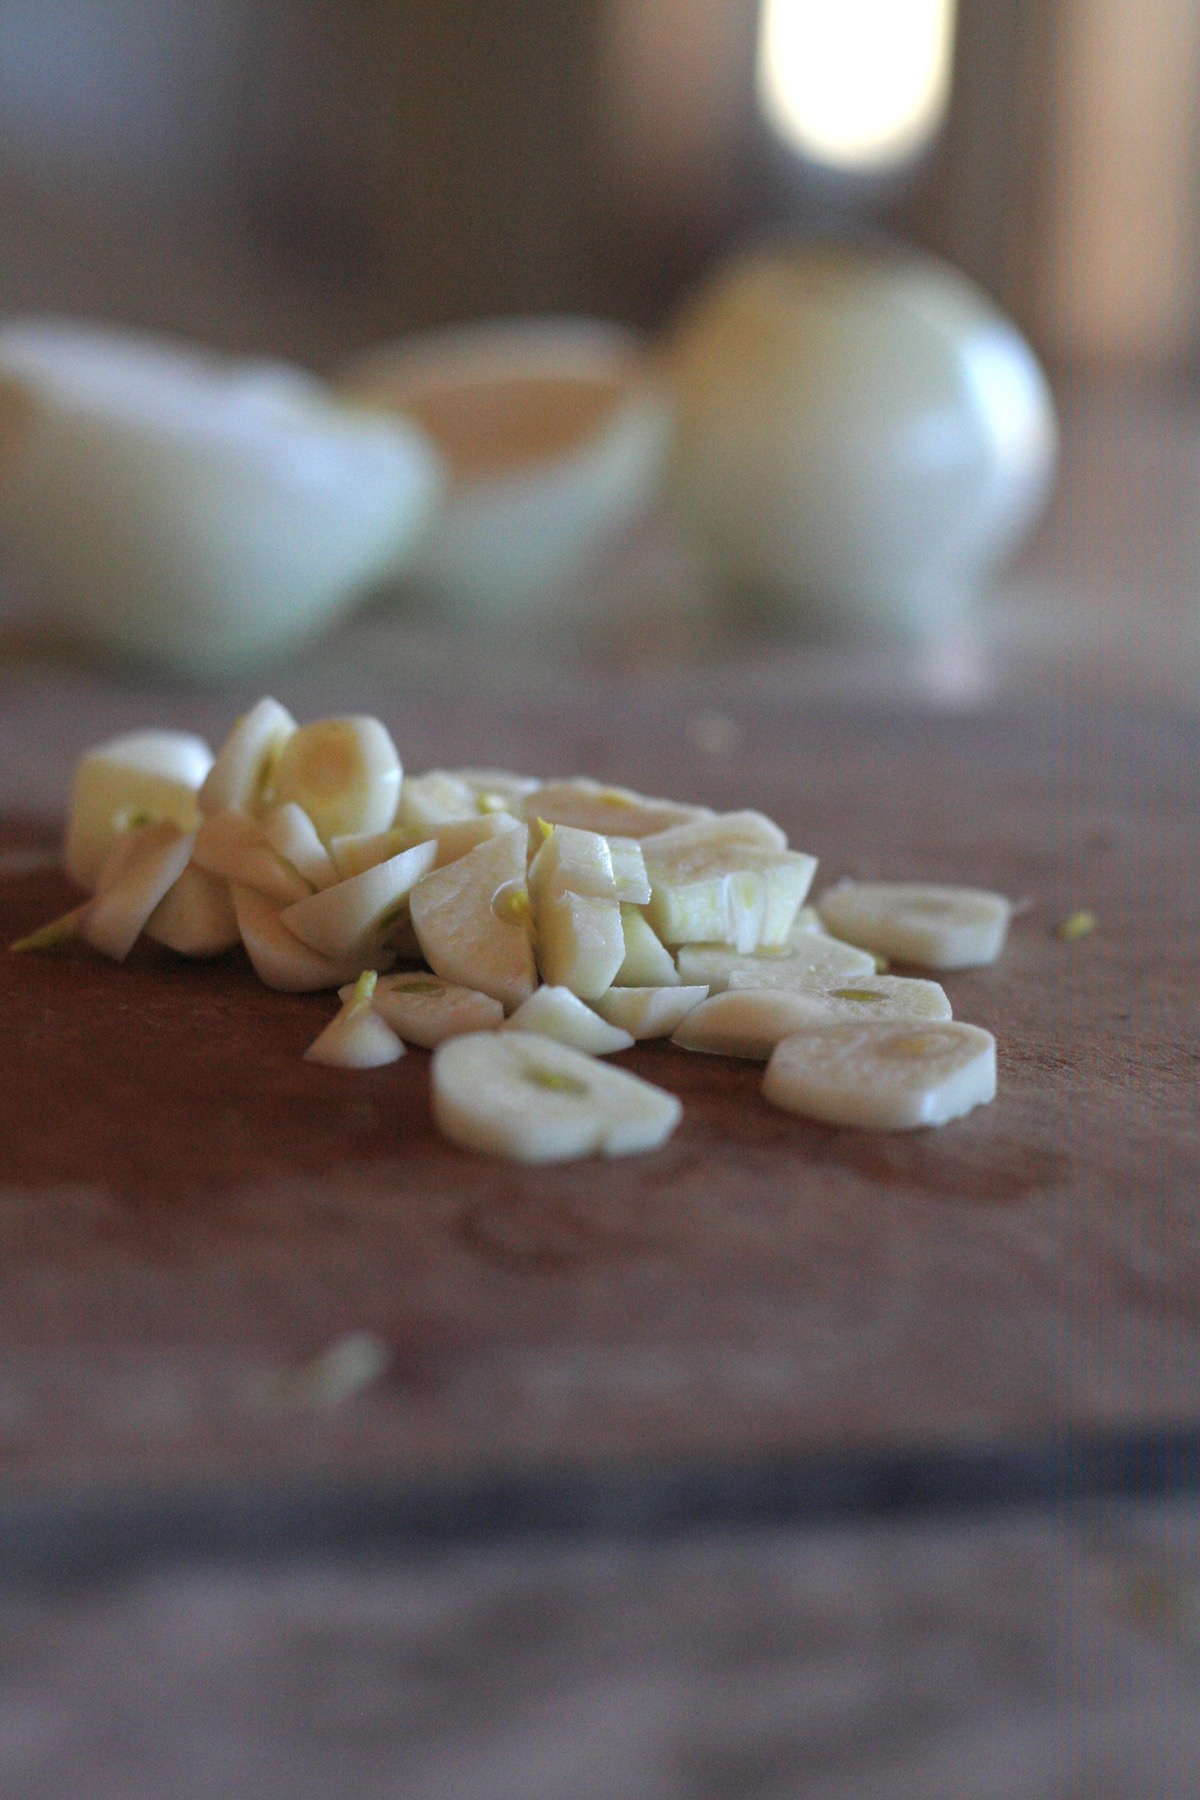 Sliced garlic on a wooden cutting board.